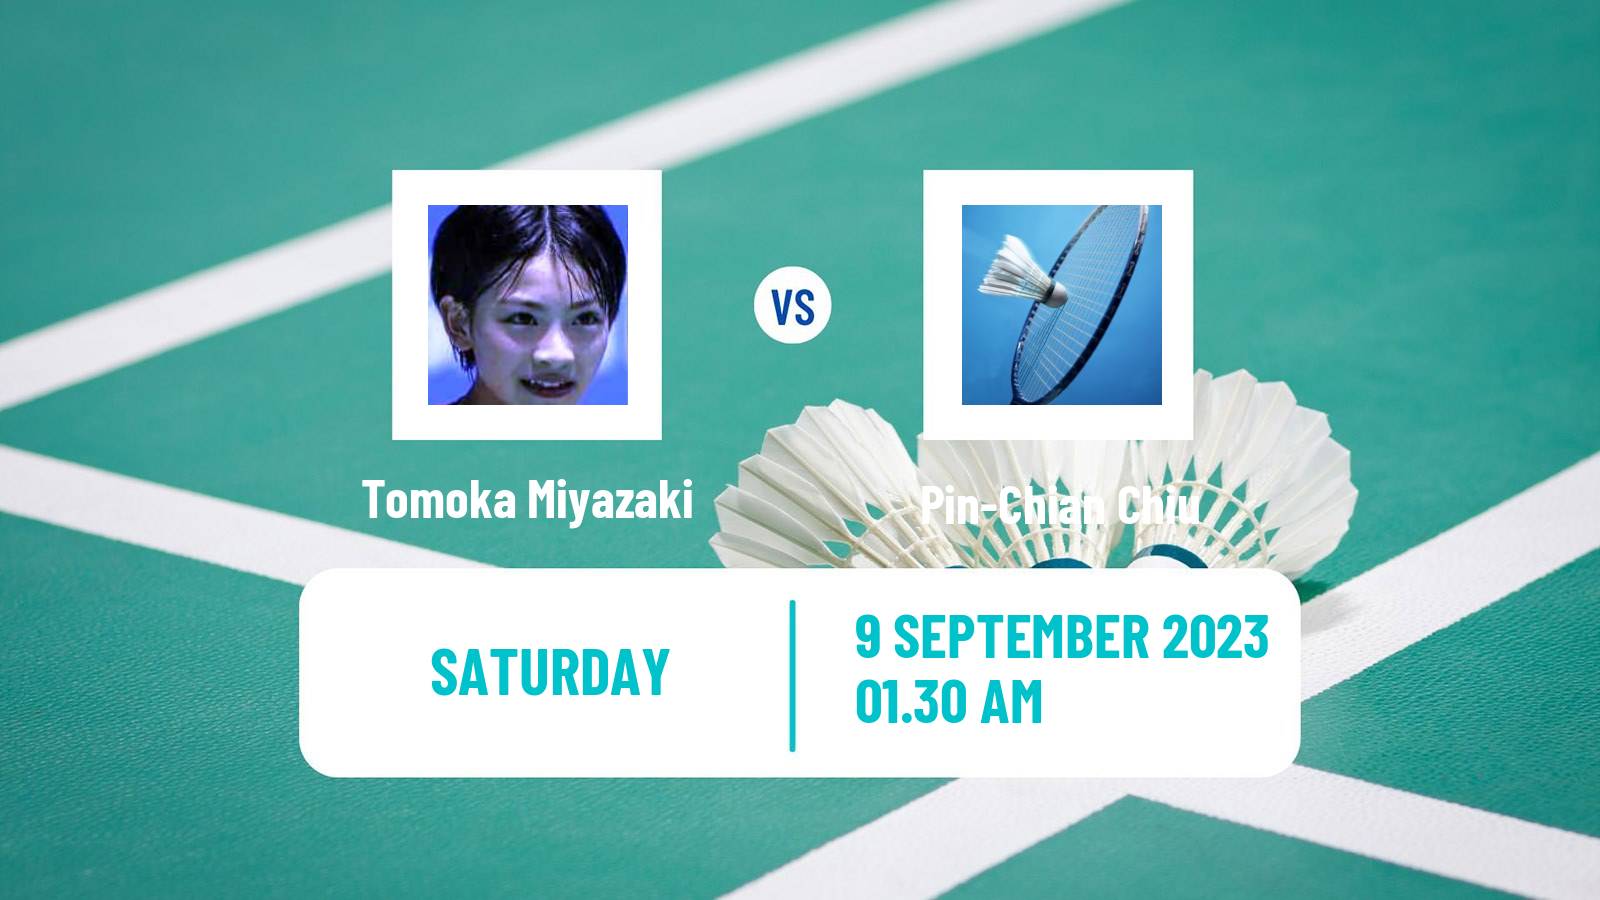 Badminton BWF World Tour Indonesia Masters 2 Women Tomoka Miyazaki - Pin-Chian Chiu